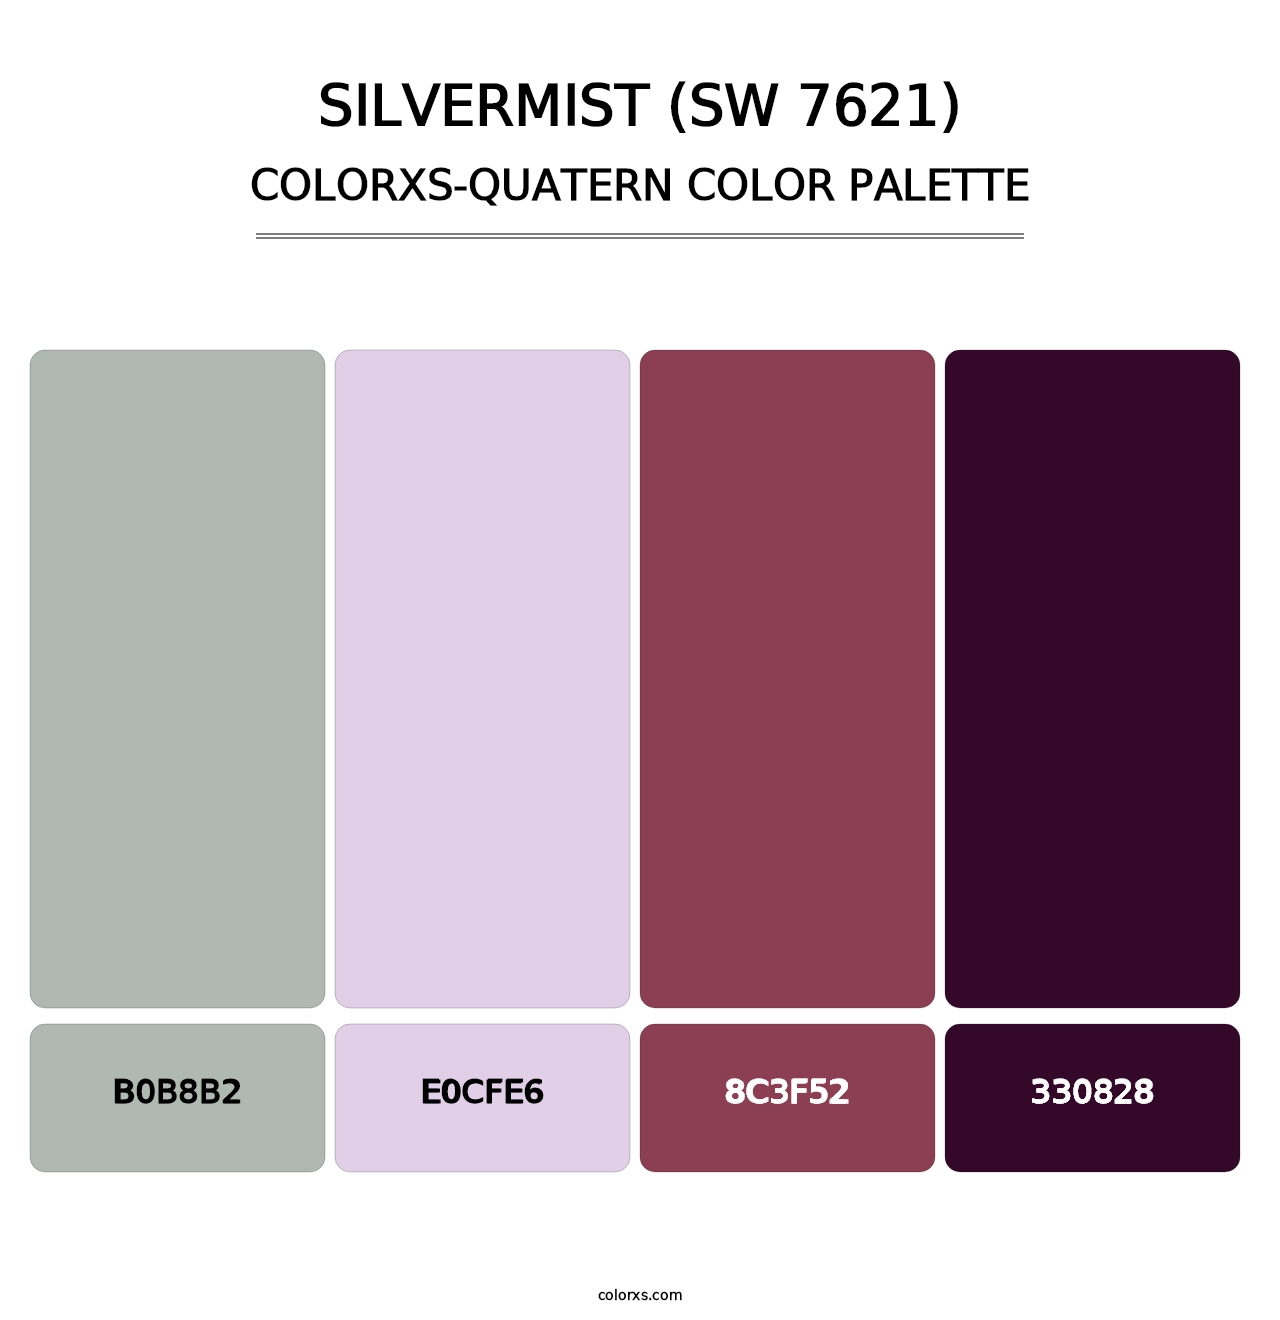 Silvermist (SW 7621) - Colorxs Quatern Palette